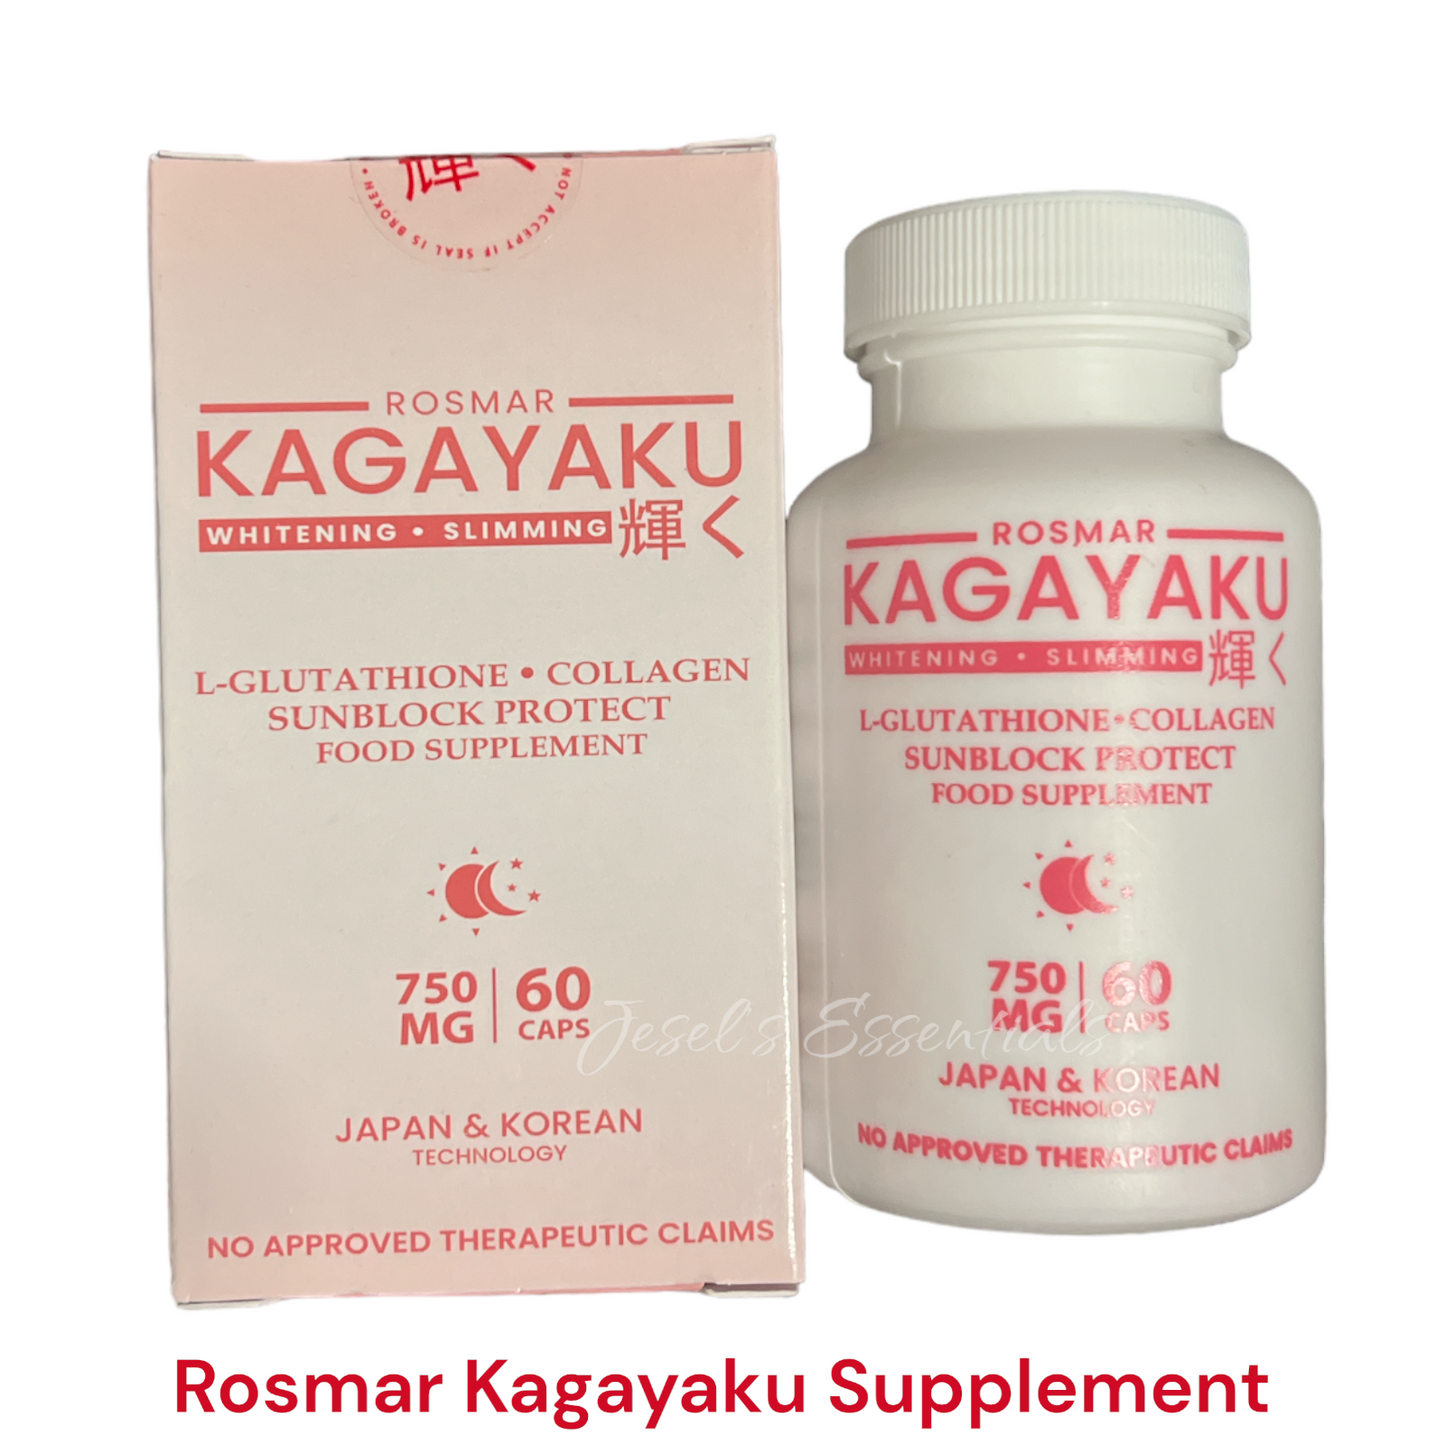 Rosmar Kagayaku Whitening & Slimming Capsule